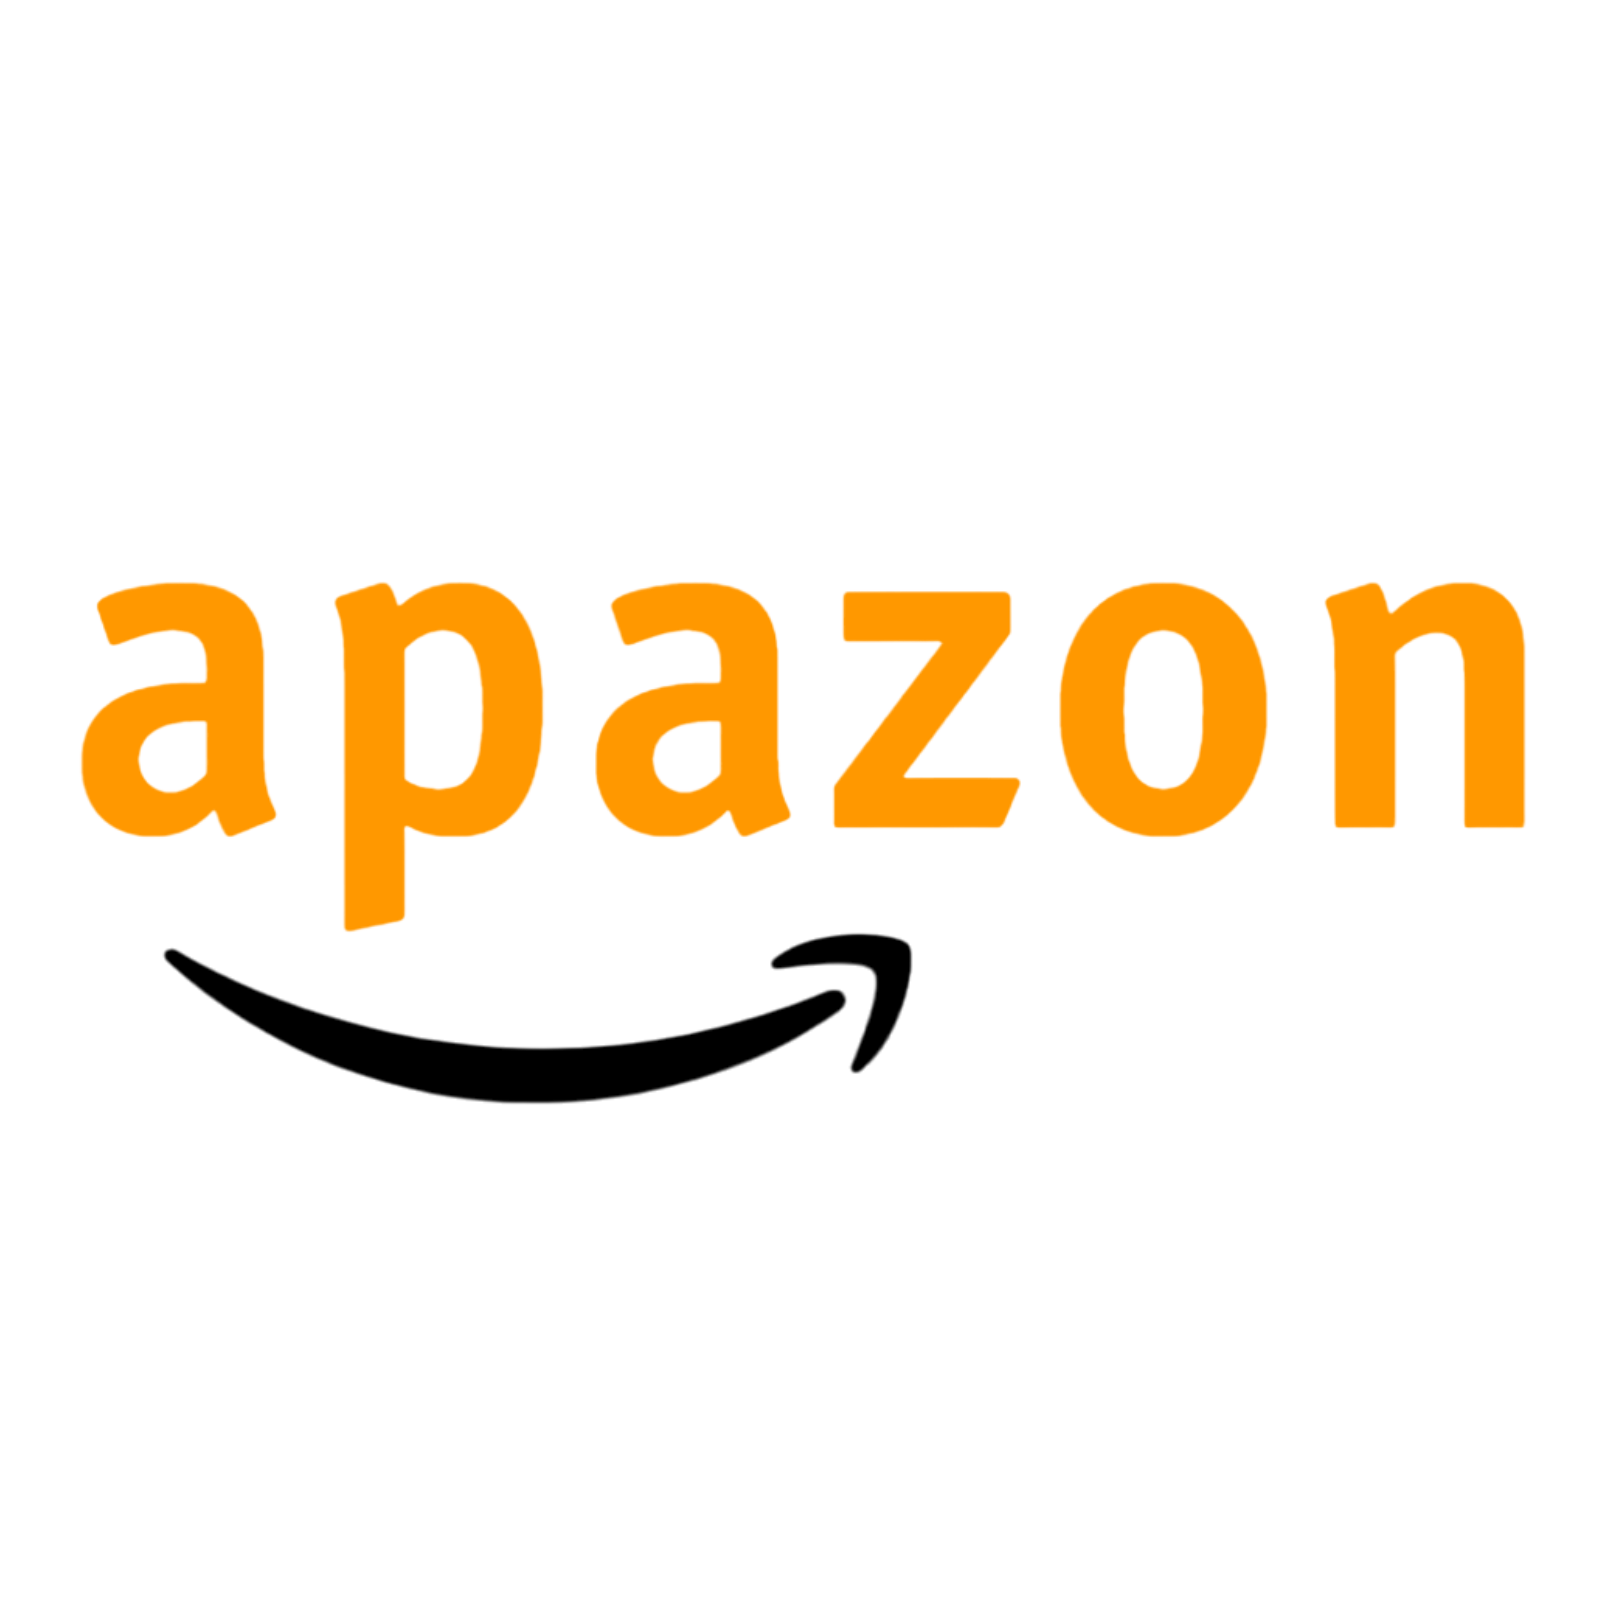 apazon